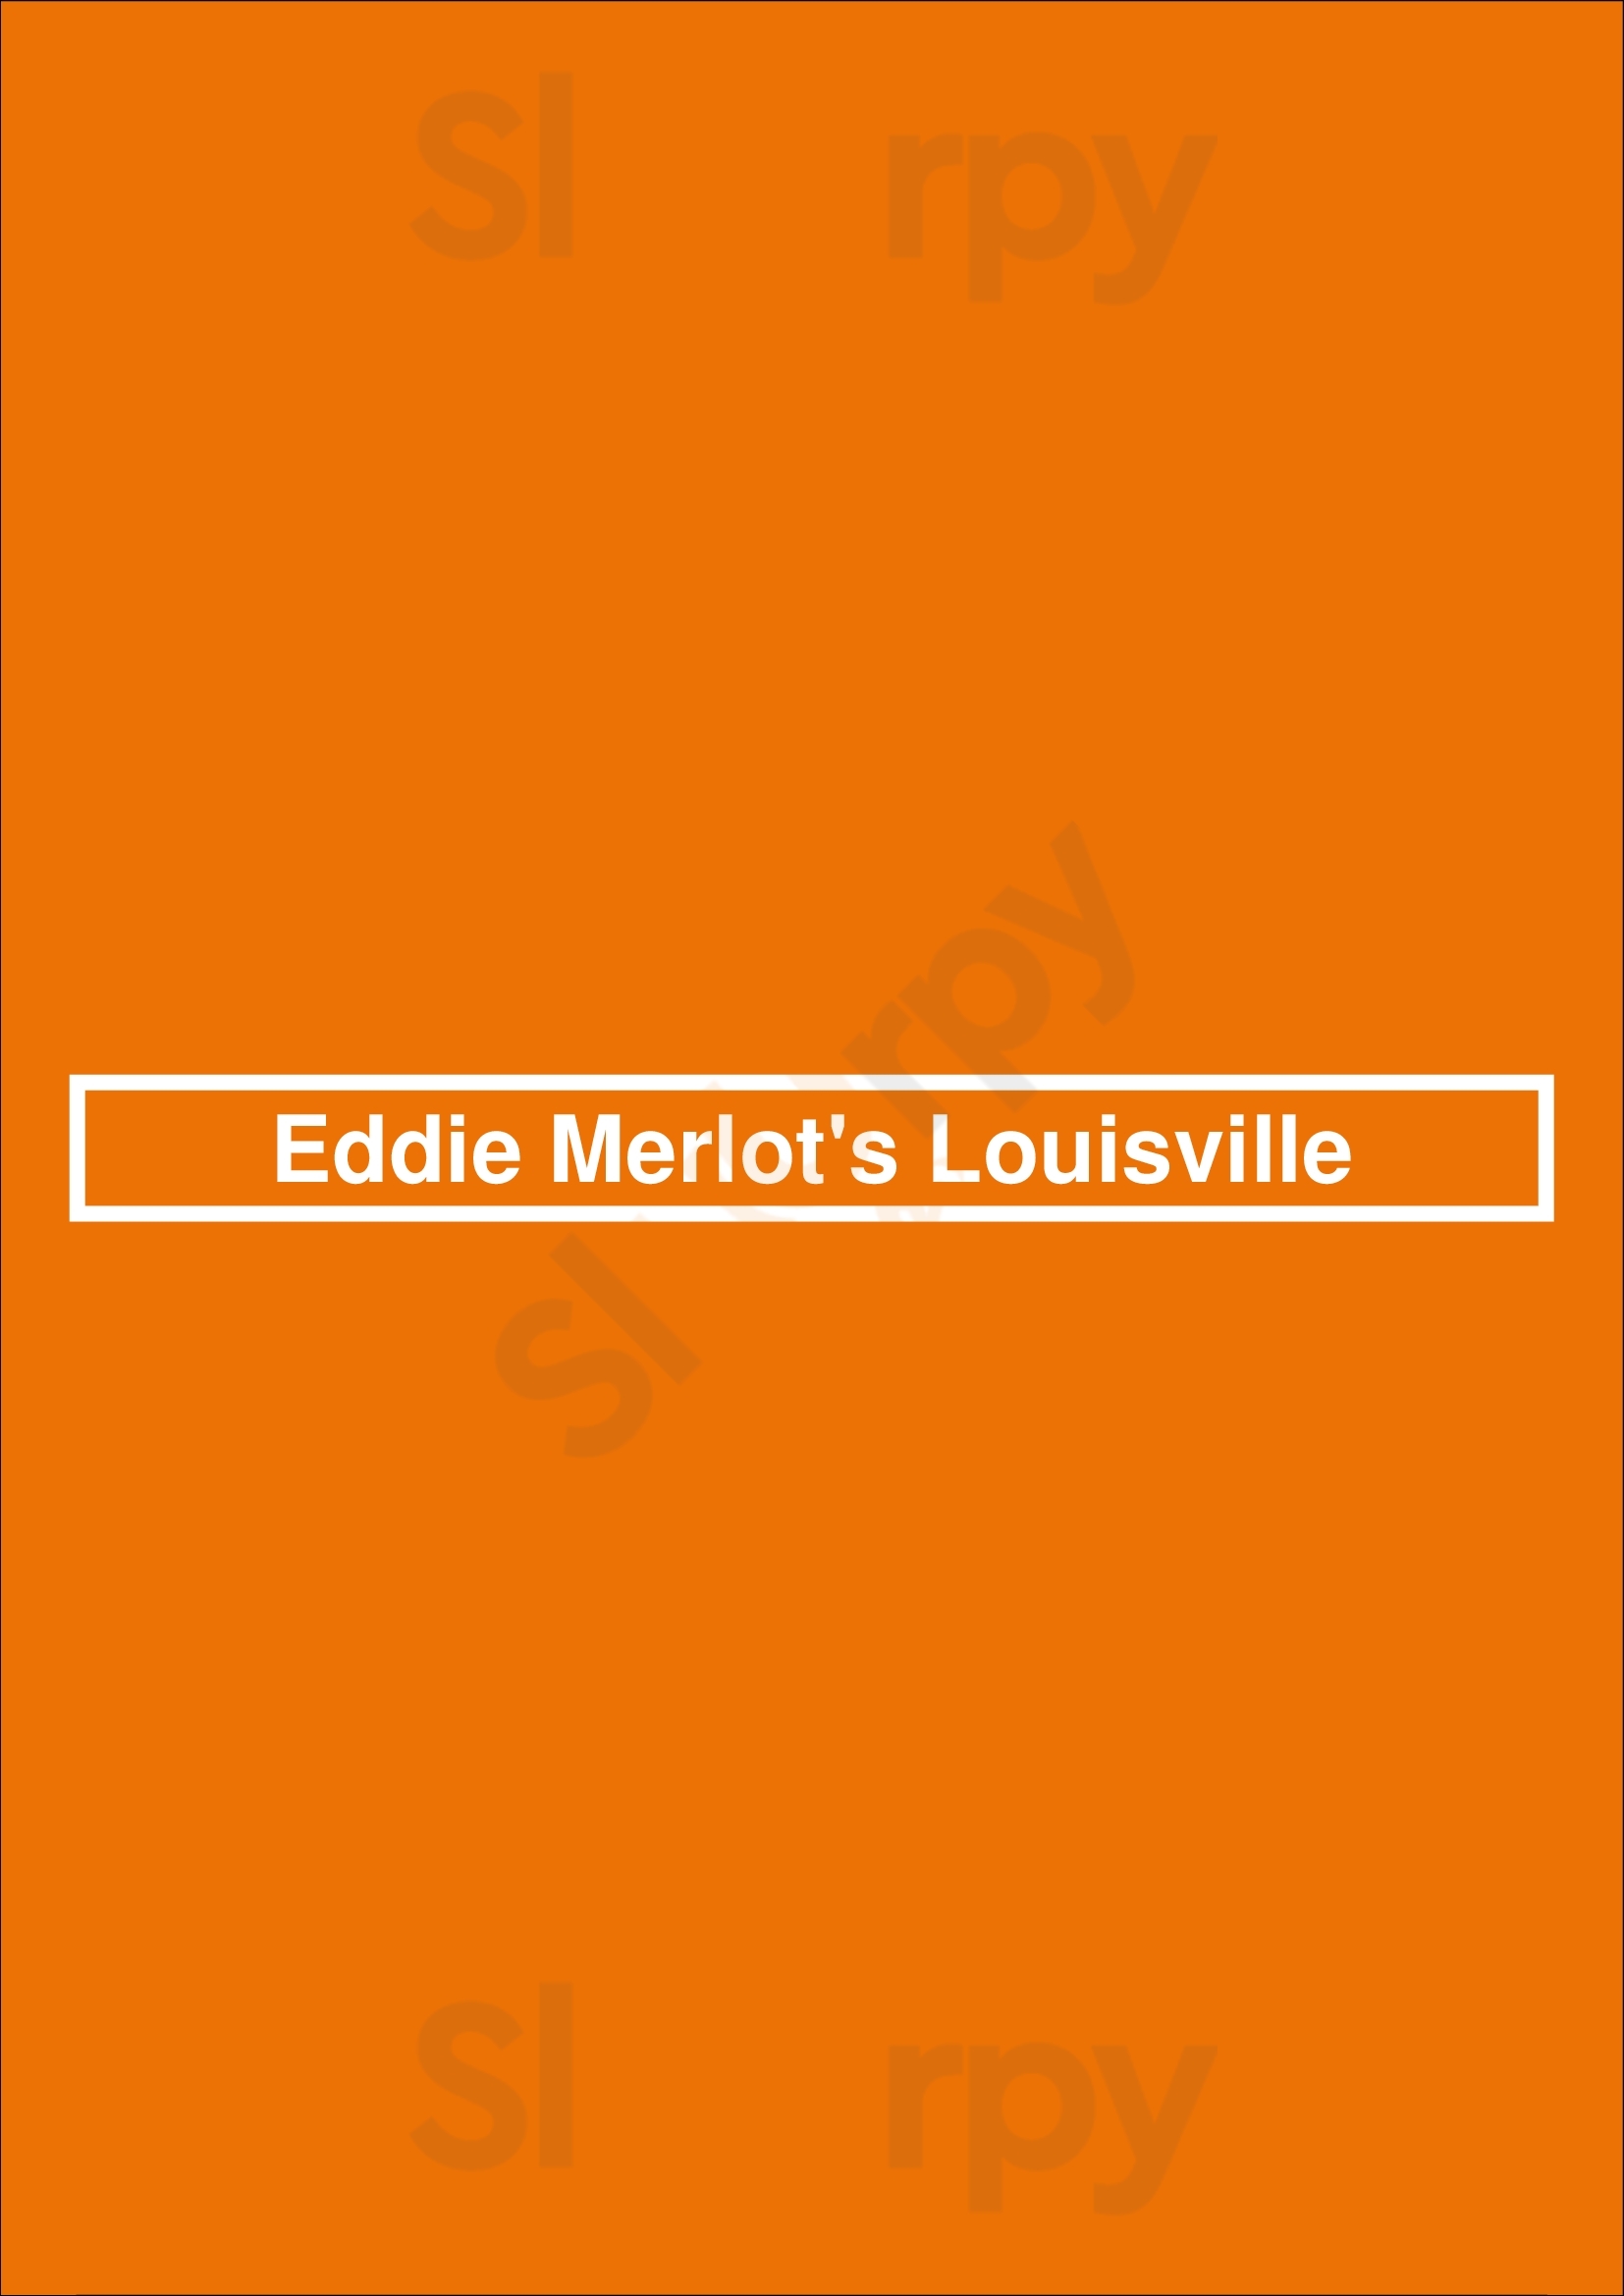 Eddie Merlot's Louisville Louisville Menu - 1